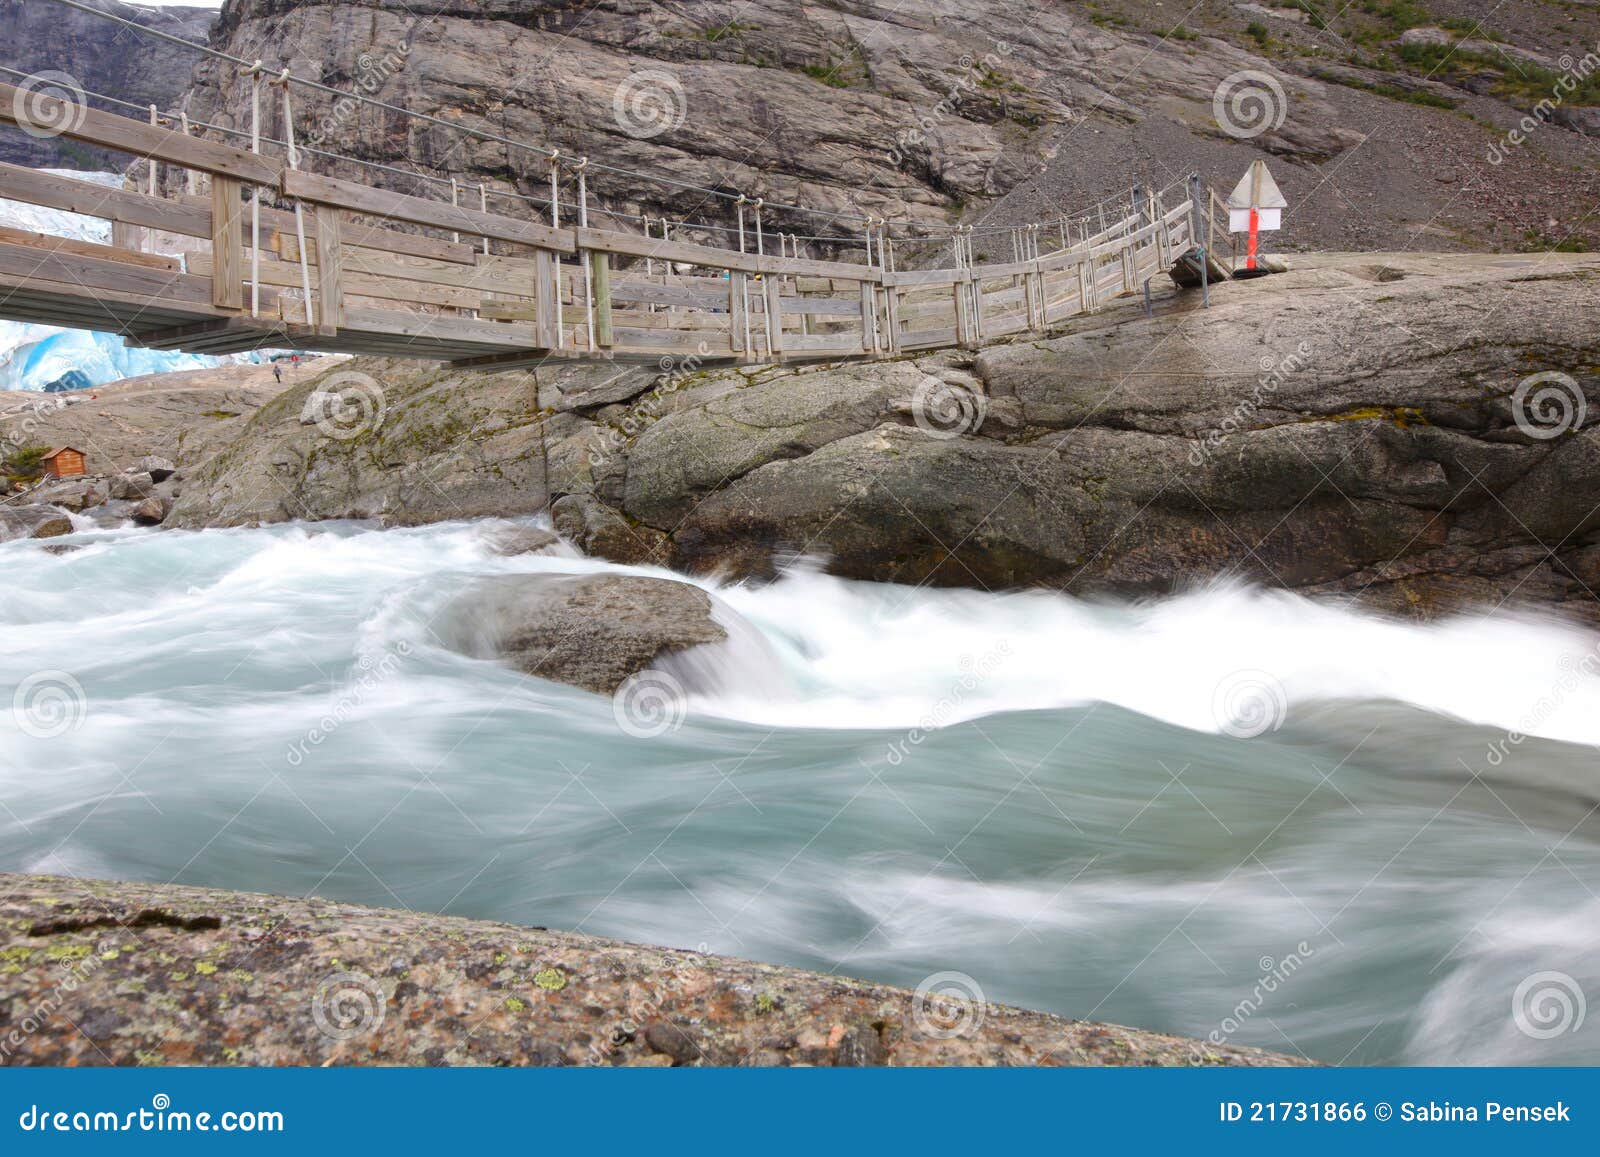 bridge over rapid runoff water from glacier